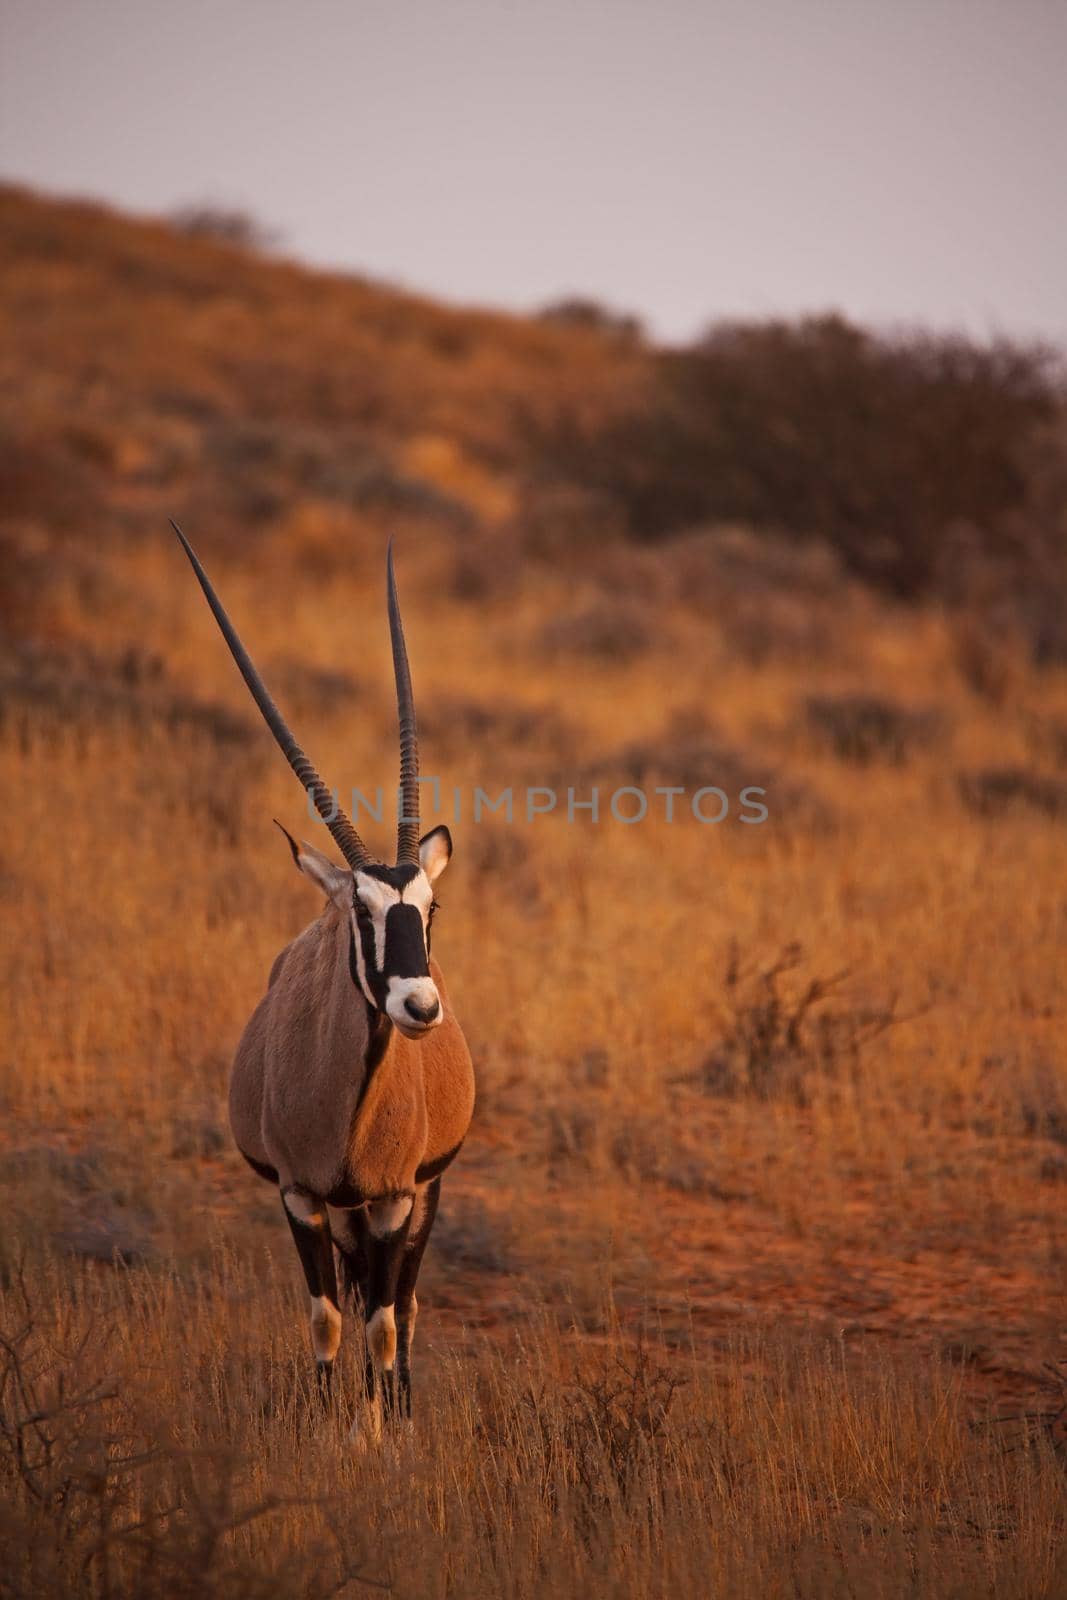 Lone Kalahari Oryx 5090 by kobus_peche